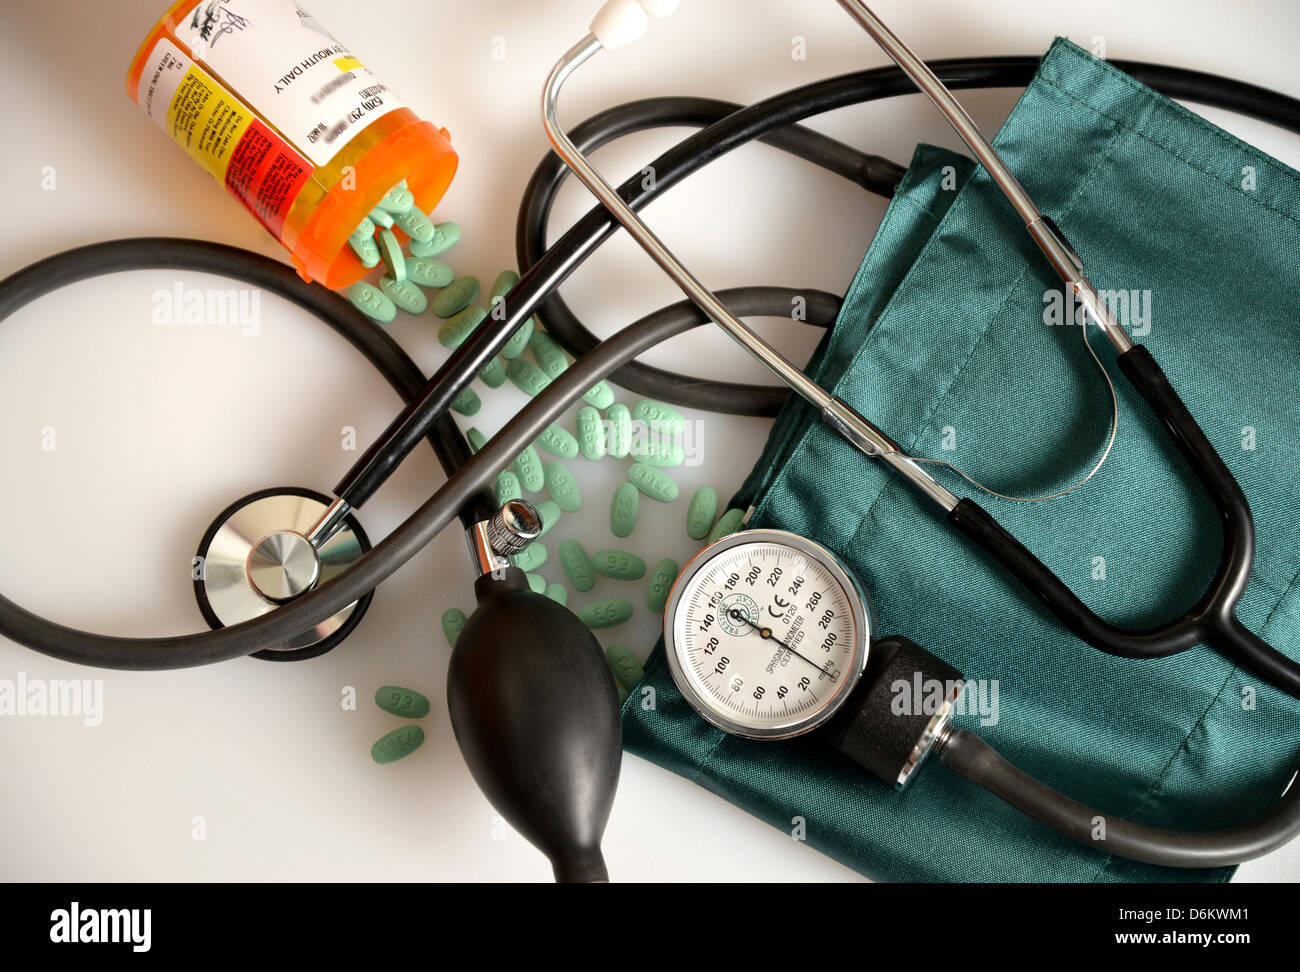 Eine Blutdruckmanschette, Stethoskop und Losartan 100 mg Tabletten, eine  Droge, die hauptsächlich zur Behandlung von hohem Blutdruck (Hypertonie  Stockfotografie - Alamy